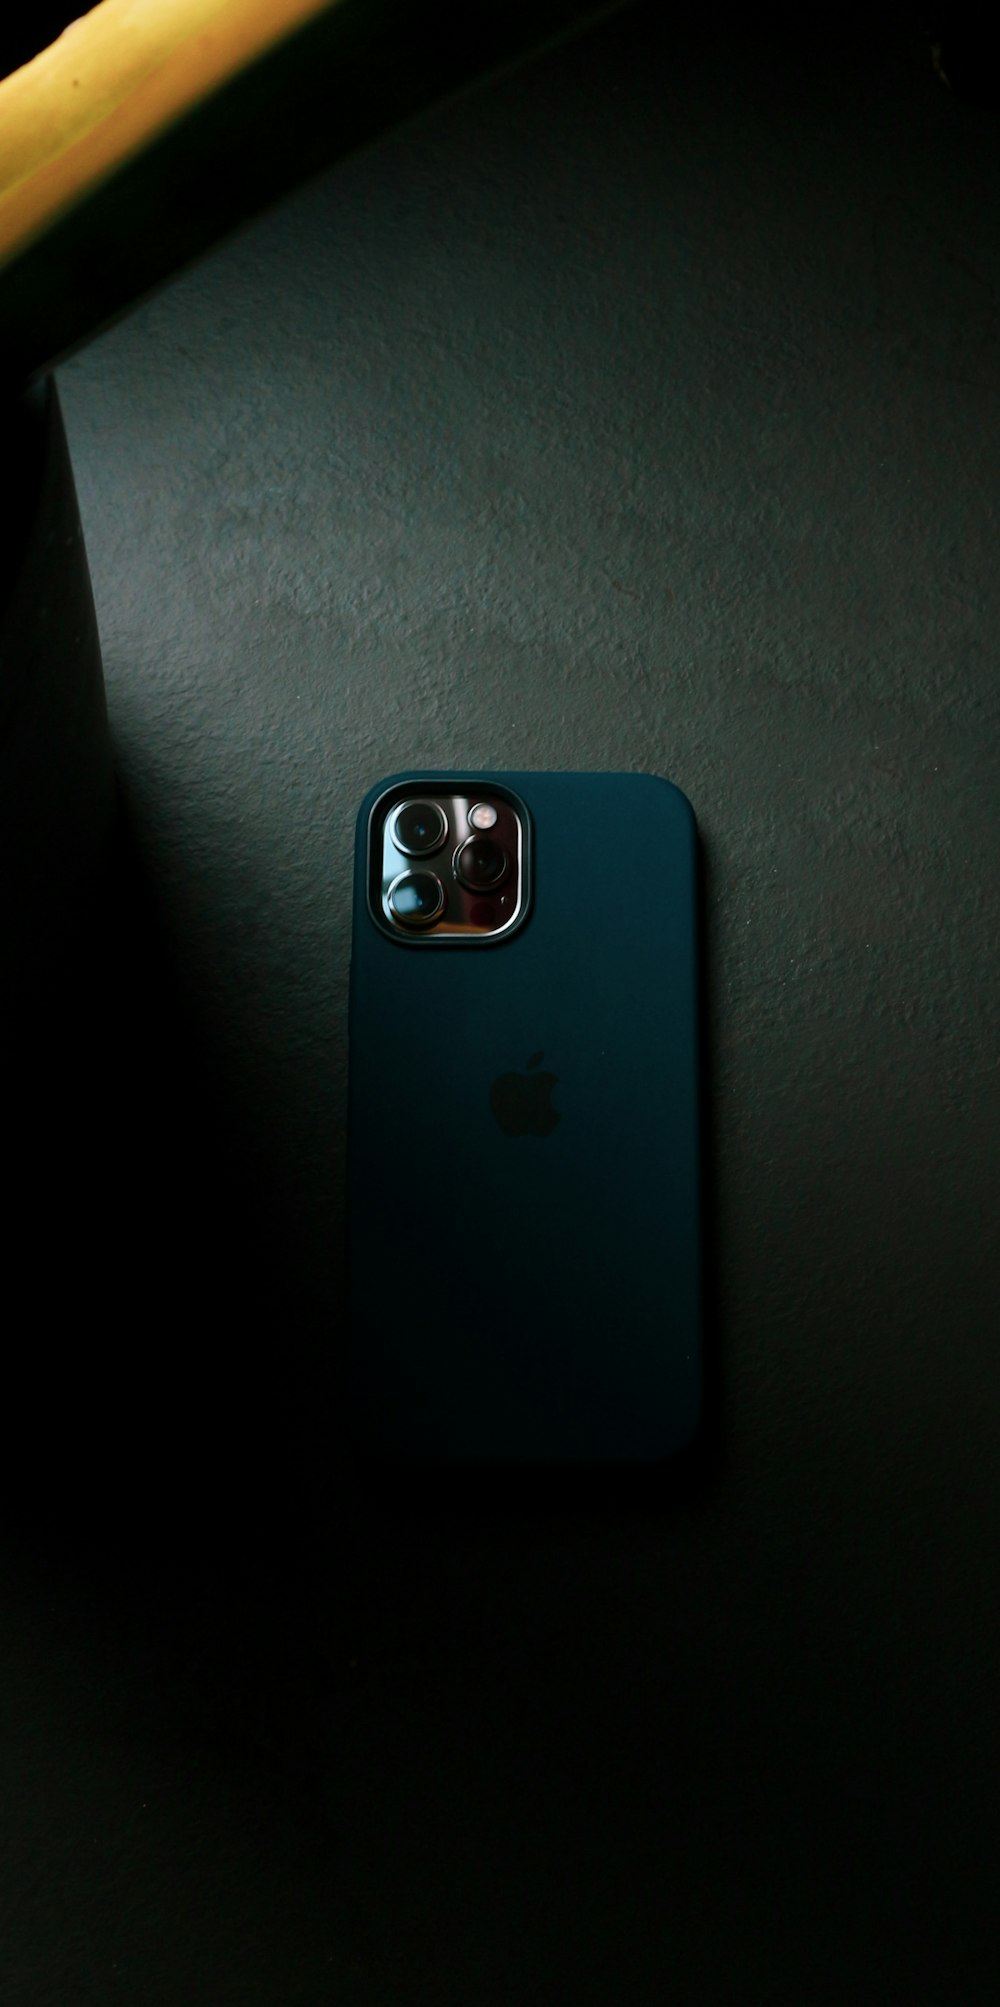 Coque iPhone bleue sur textile gris